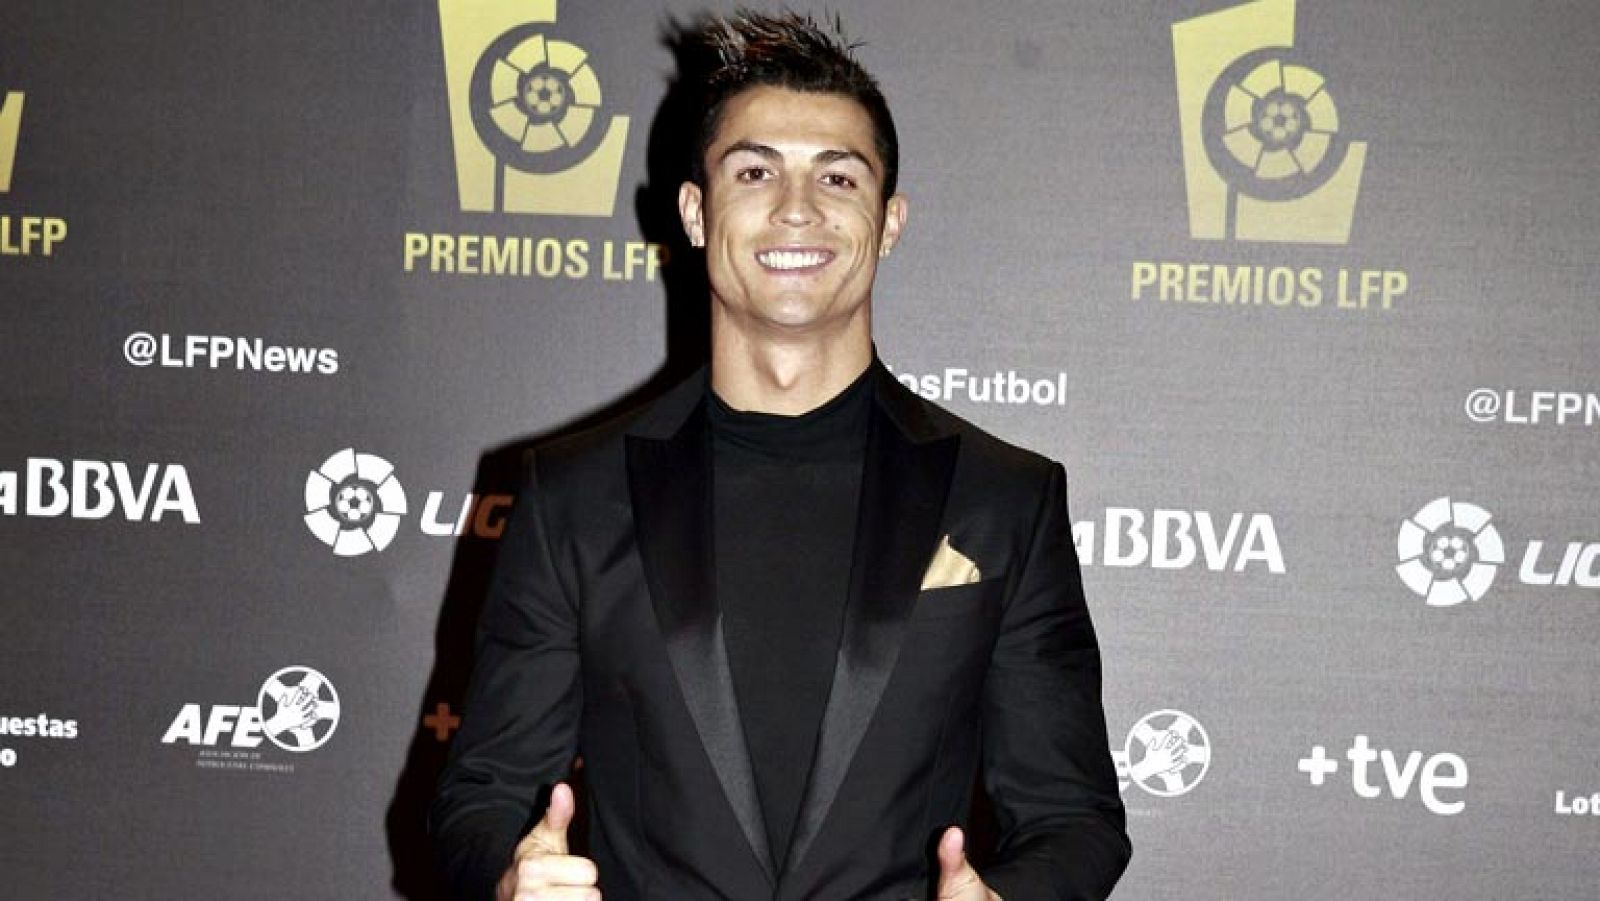 Telediario 1: La LFP equipara premios para premiar a Messi y a Ronaldo | RTVE Play